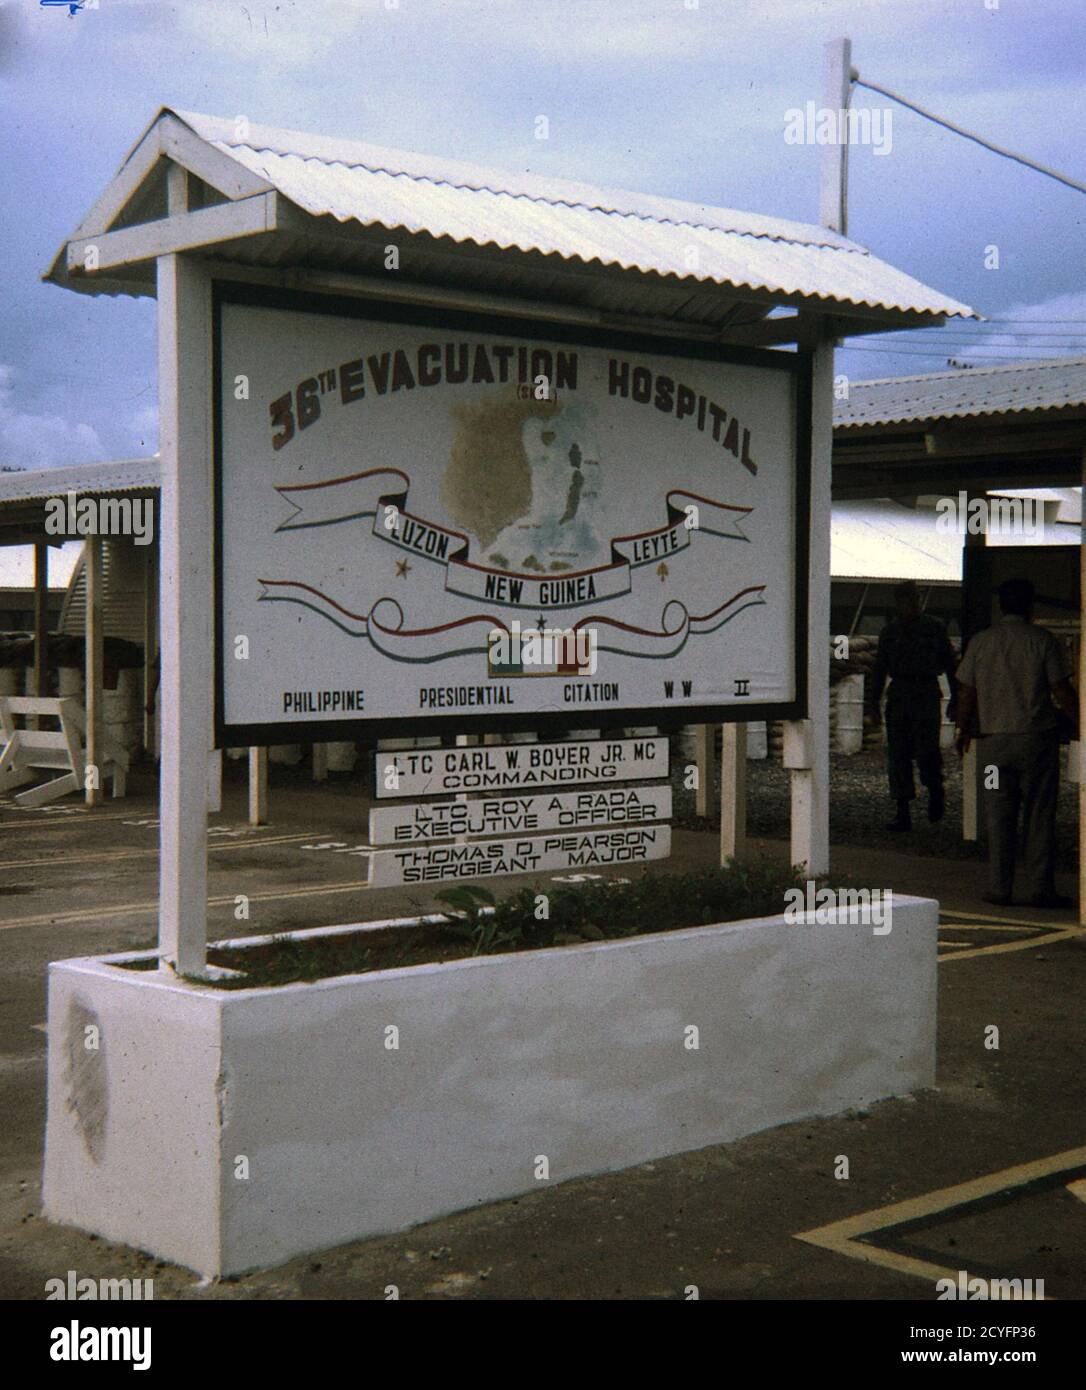 USA Vietnam-Krieg / Vietnam War - 36th Evacuation Hospital Vung Tau Stock Photo